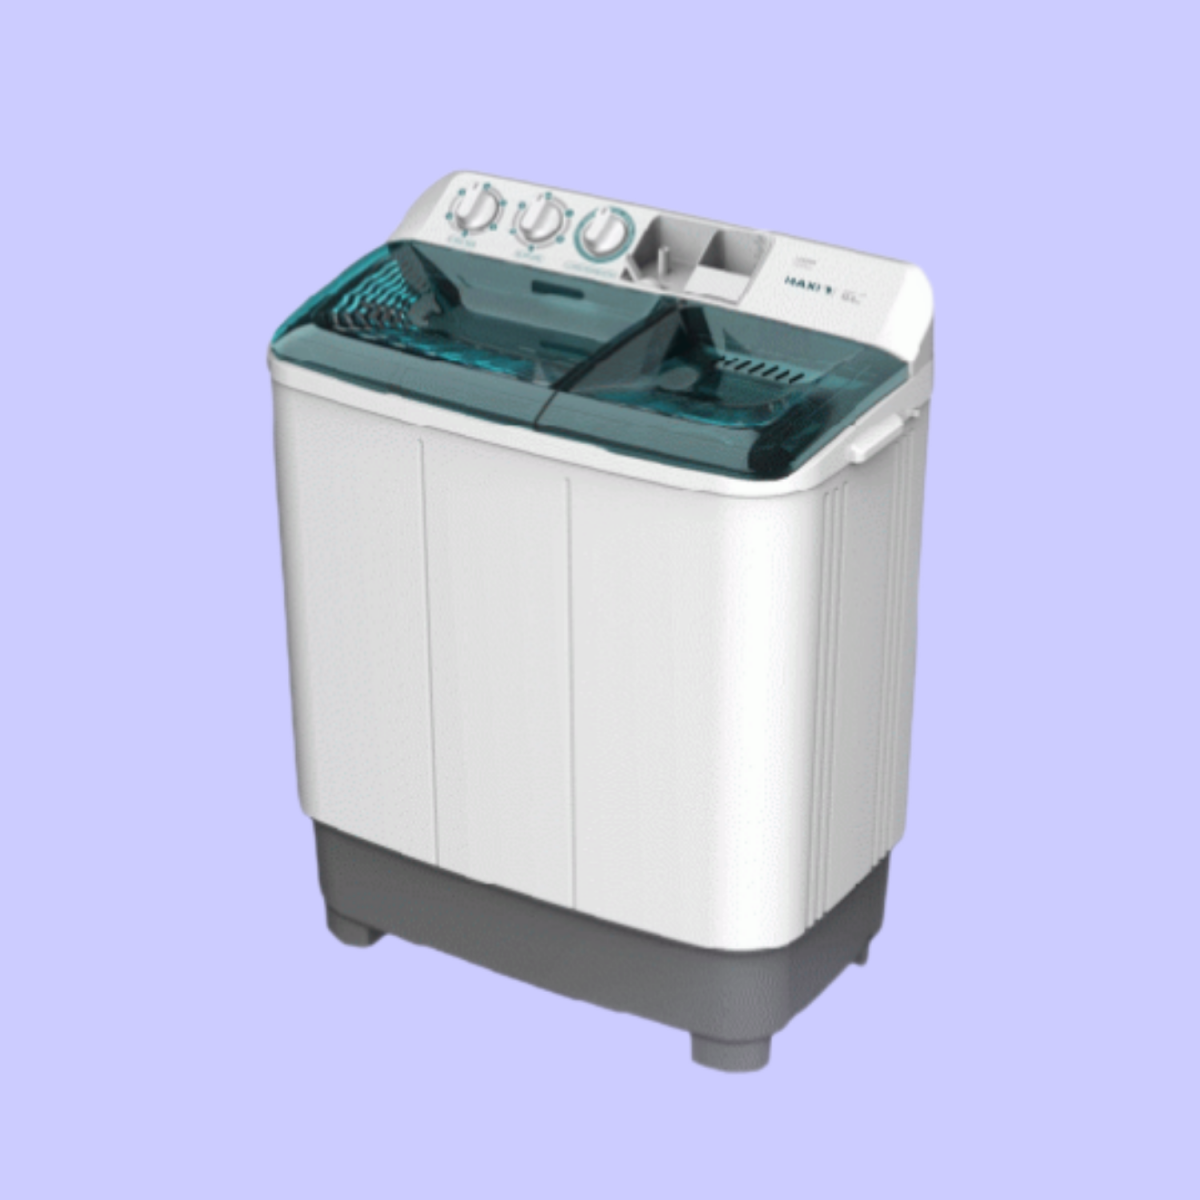 MAXI Manual 12KG washing machine WM 120FTG1 seamoob